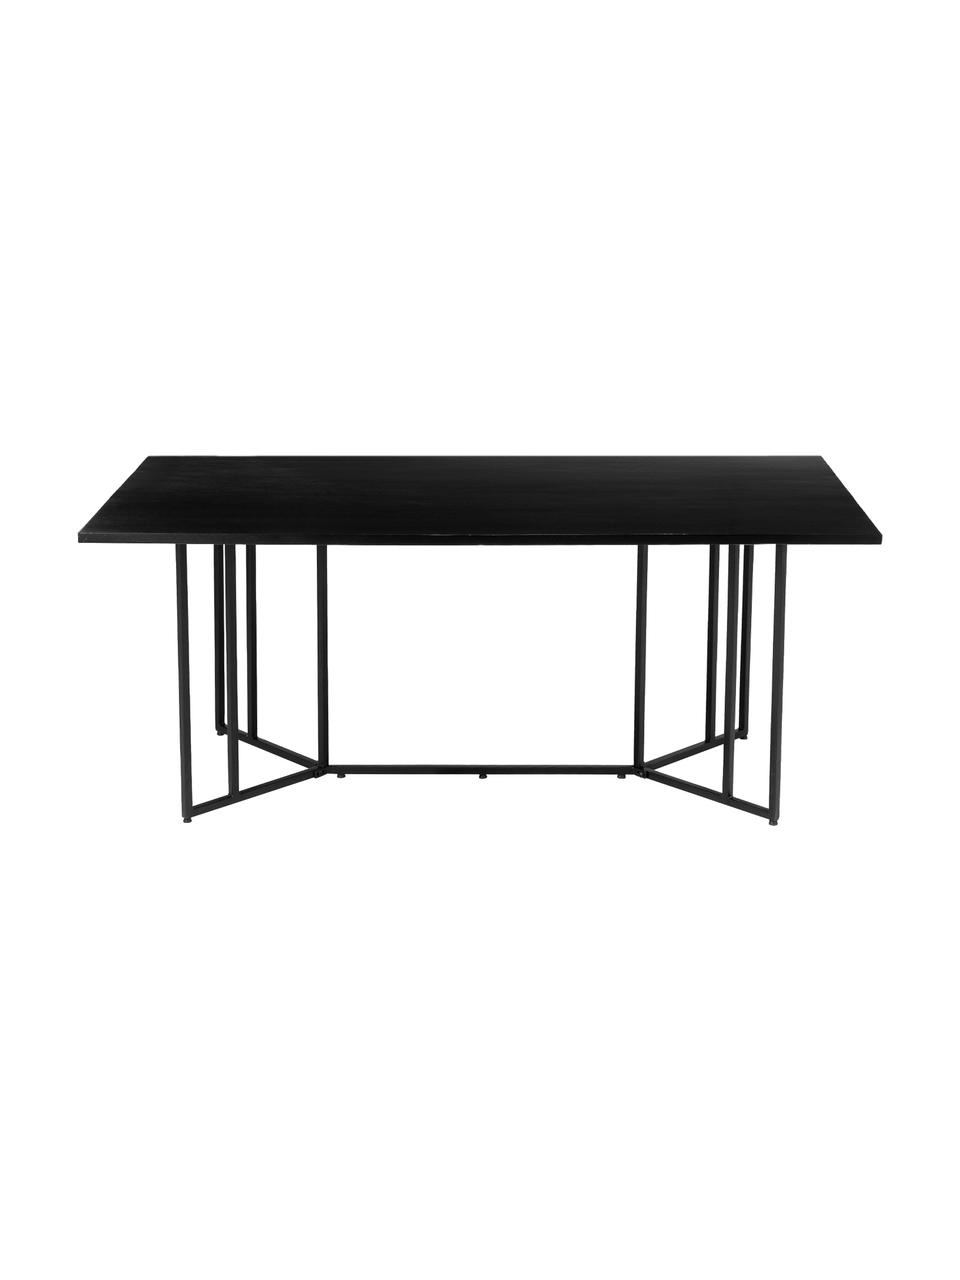 Jídelní stůl s deskou z masivního dřeva Luca, 180 x 90 cm, Deska stolu: mangové dřevo, černá, lakovaná; rám: matná černá